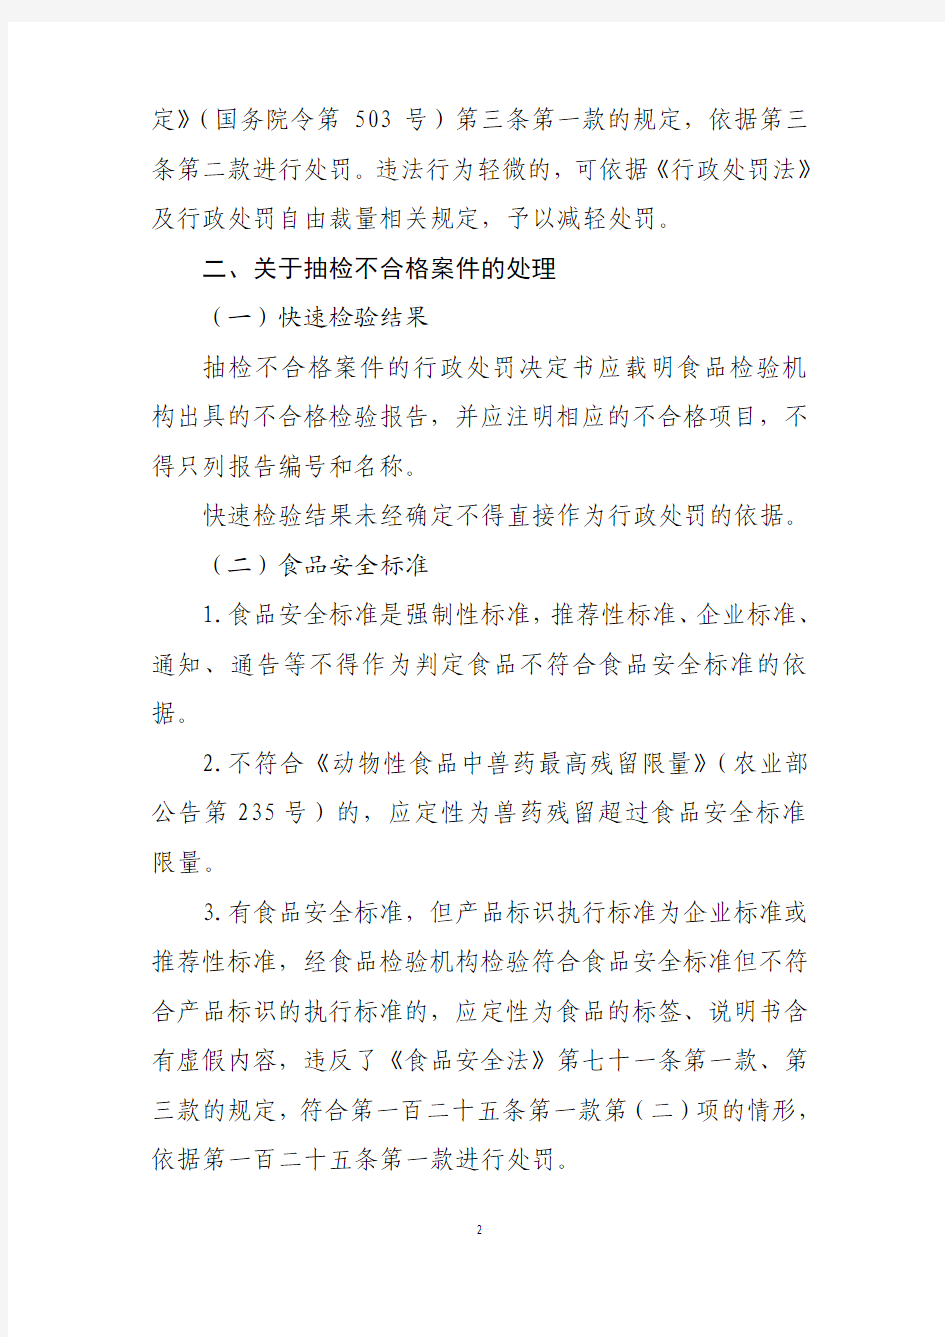 北京市食品药品监督管理局食品类相关案件处理指导意见(44p)